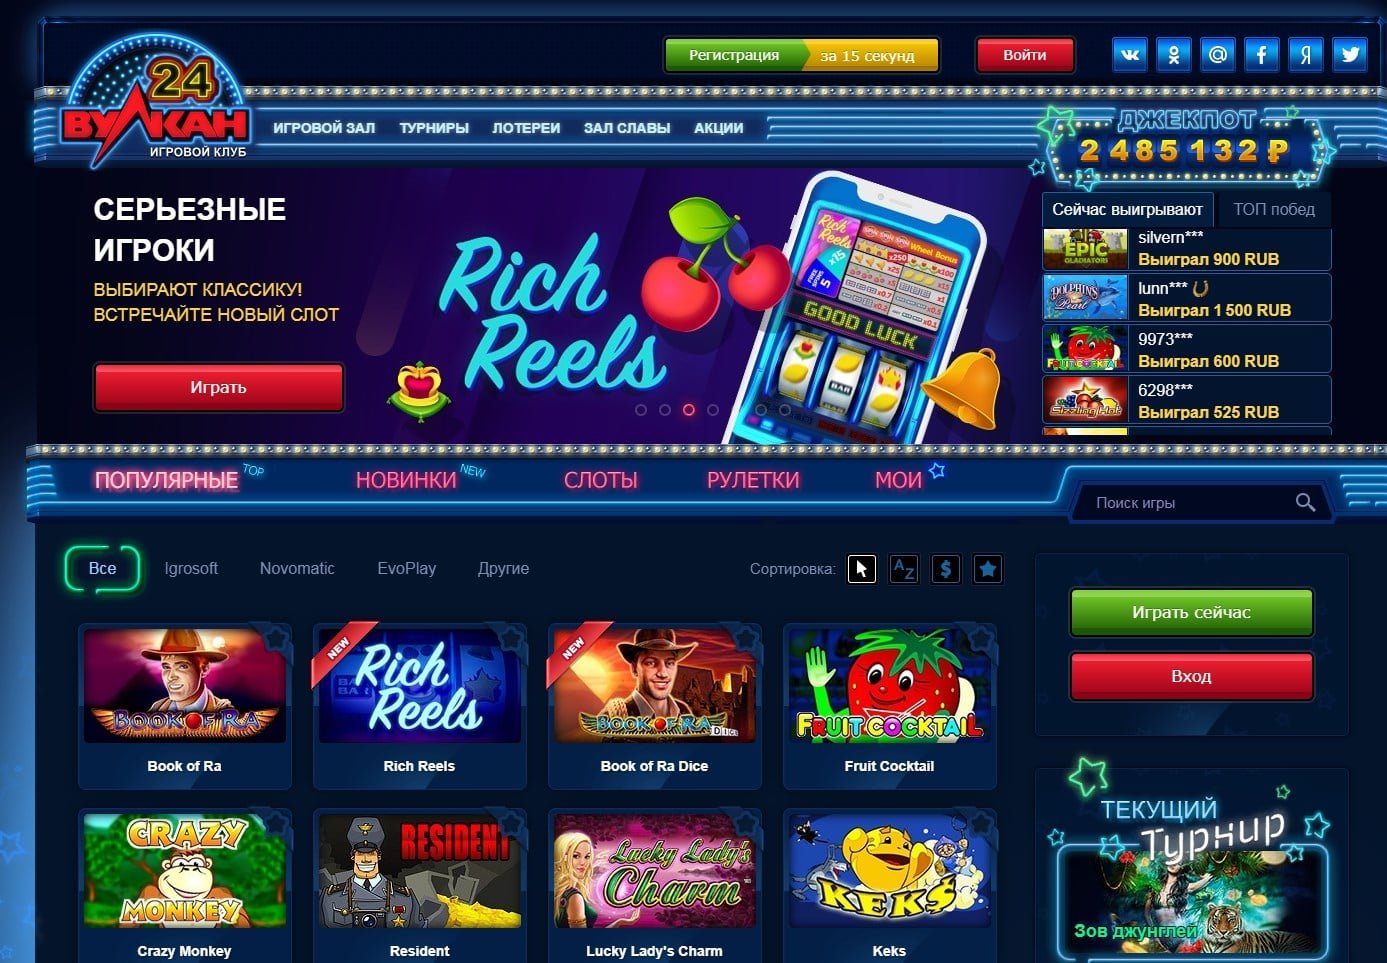 Найти вулкан казино онлайн casino vulcan info играть в игровые автоматы казино 777 онлайн